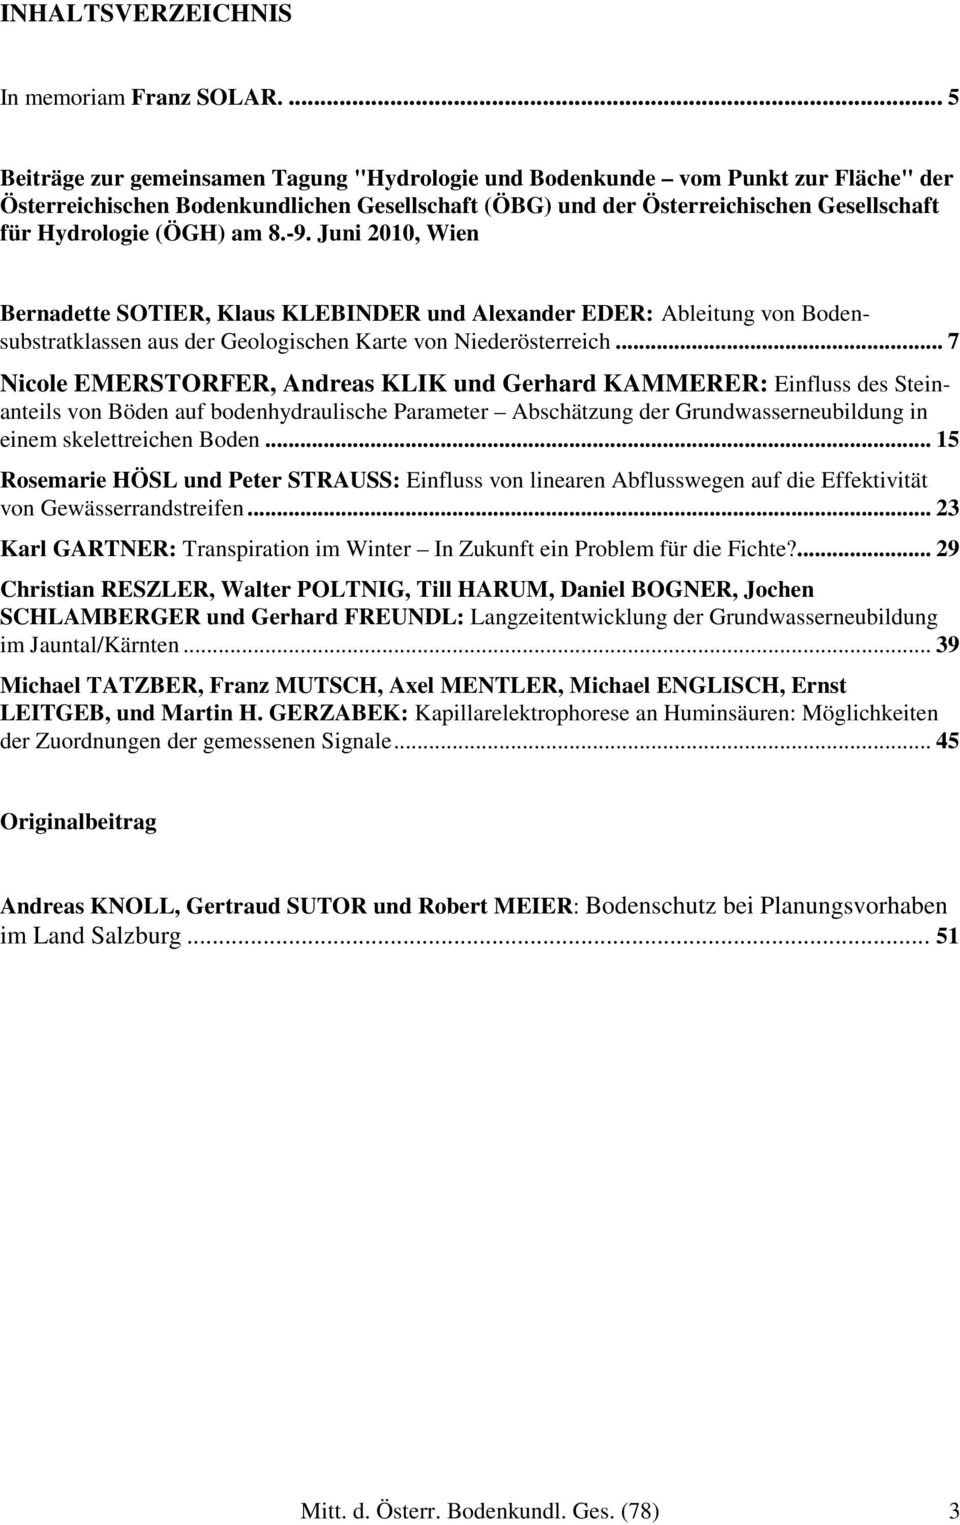 (ÖGH) am 8.-9. Juni 2010, Wien Bernadette SOTIER, Klaus KLEBINDER und Alexander EDER: Ableitung von Bodensubstratklassen aus der Geologischen Karte von Niederösterreich.